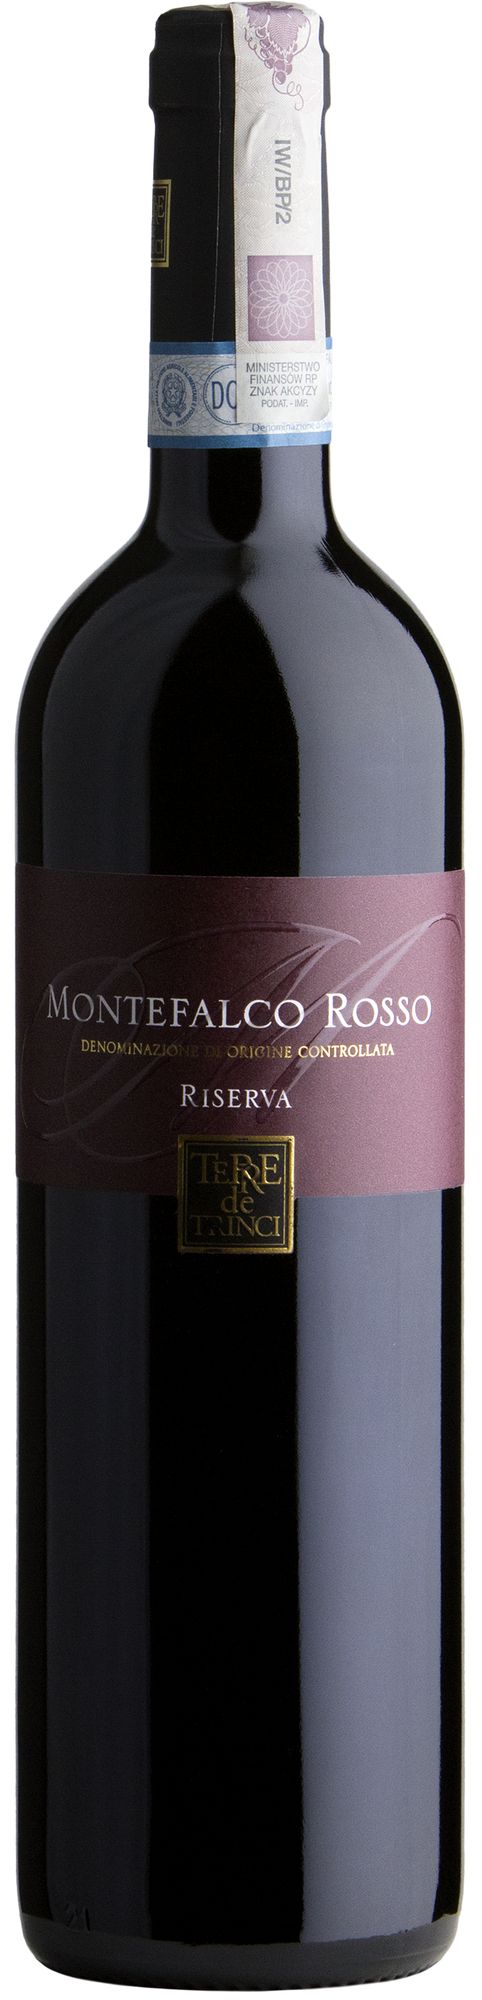 Wino Terre de Trinci Montefalco Rosso Riserva DOC